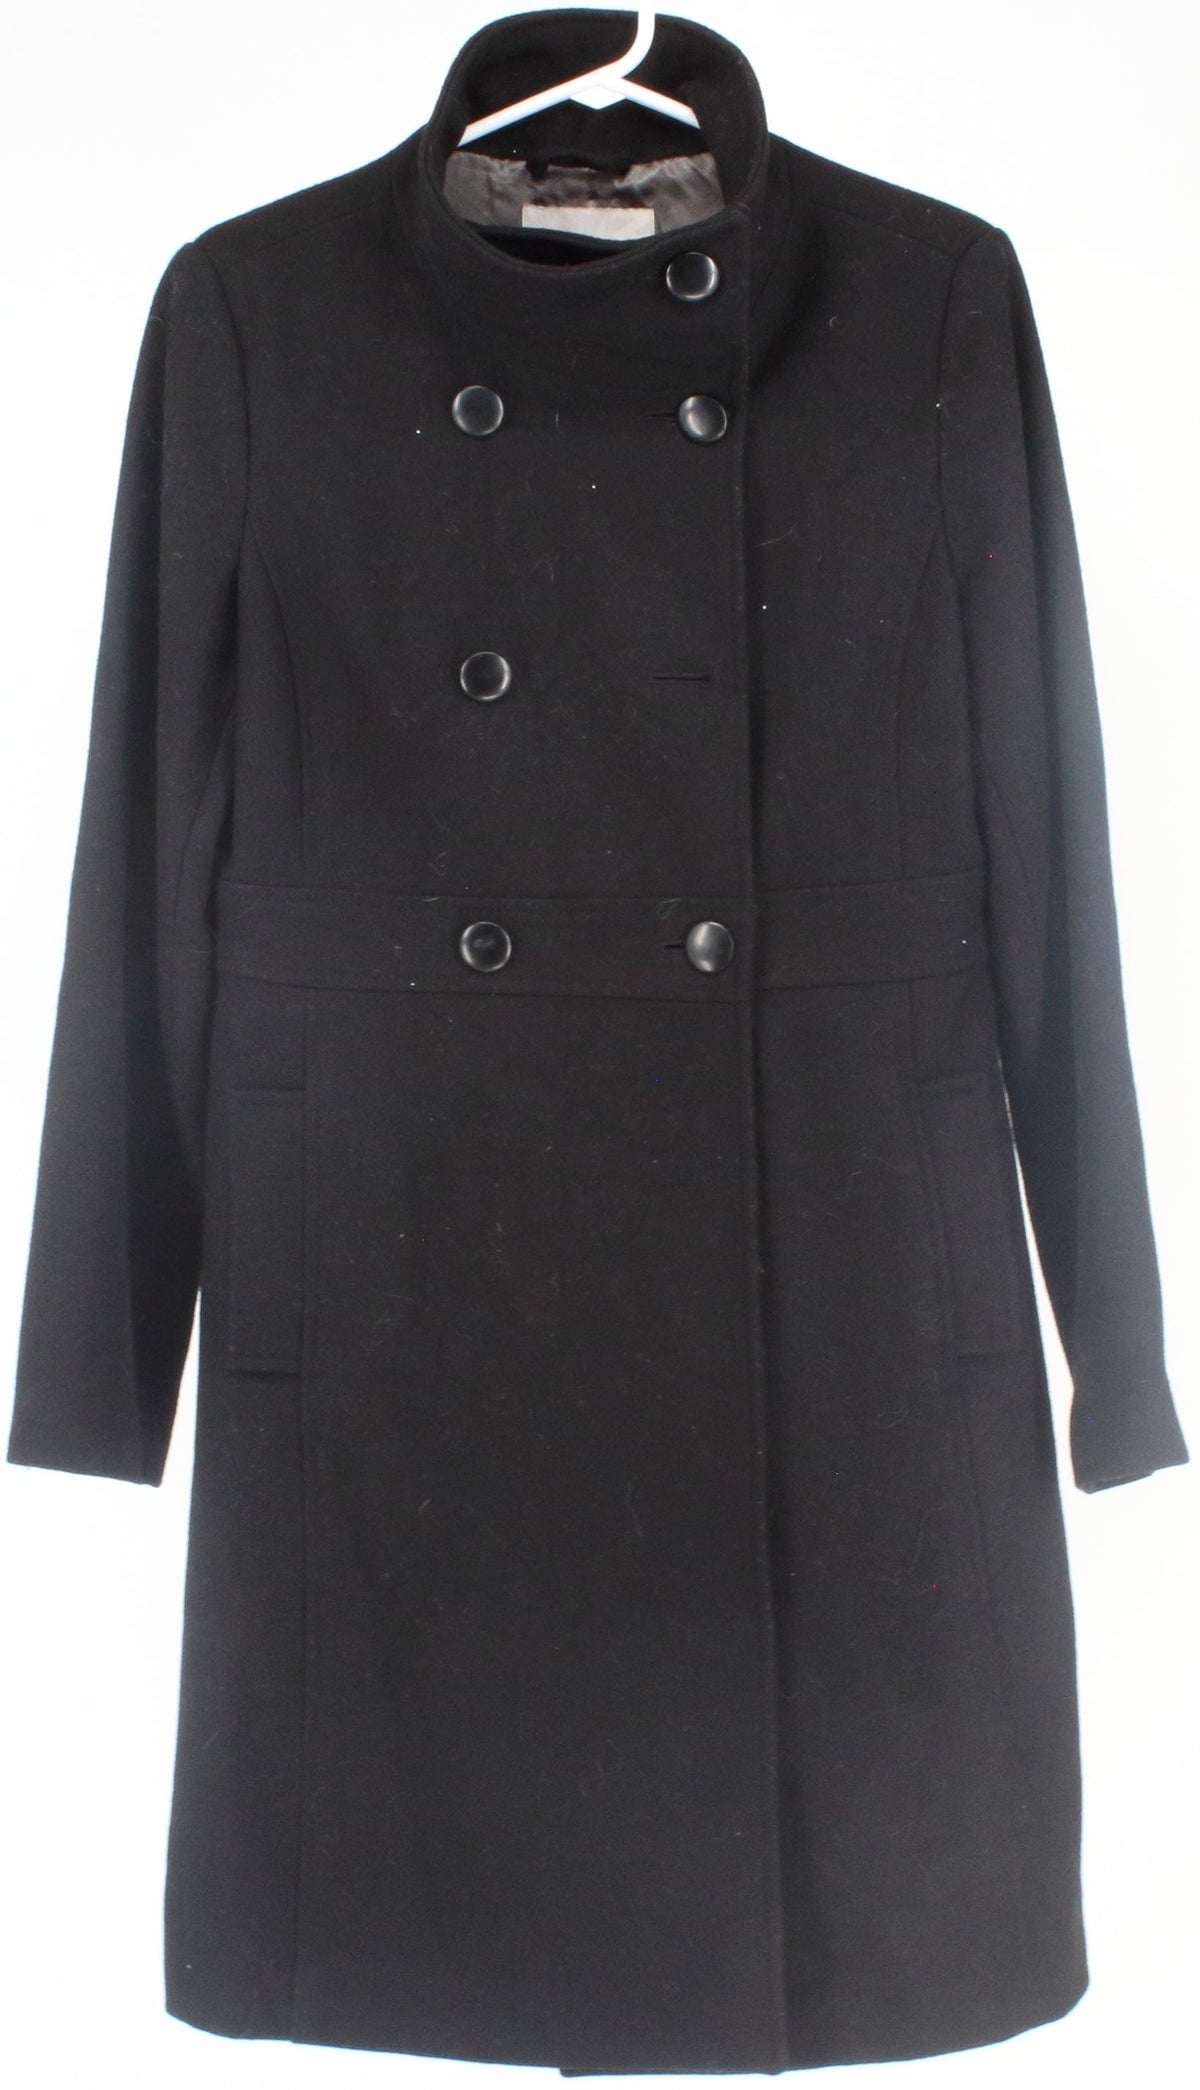 Old Navy Black Women's Coat